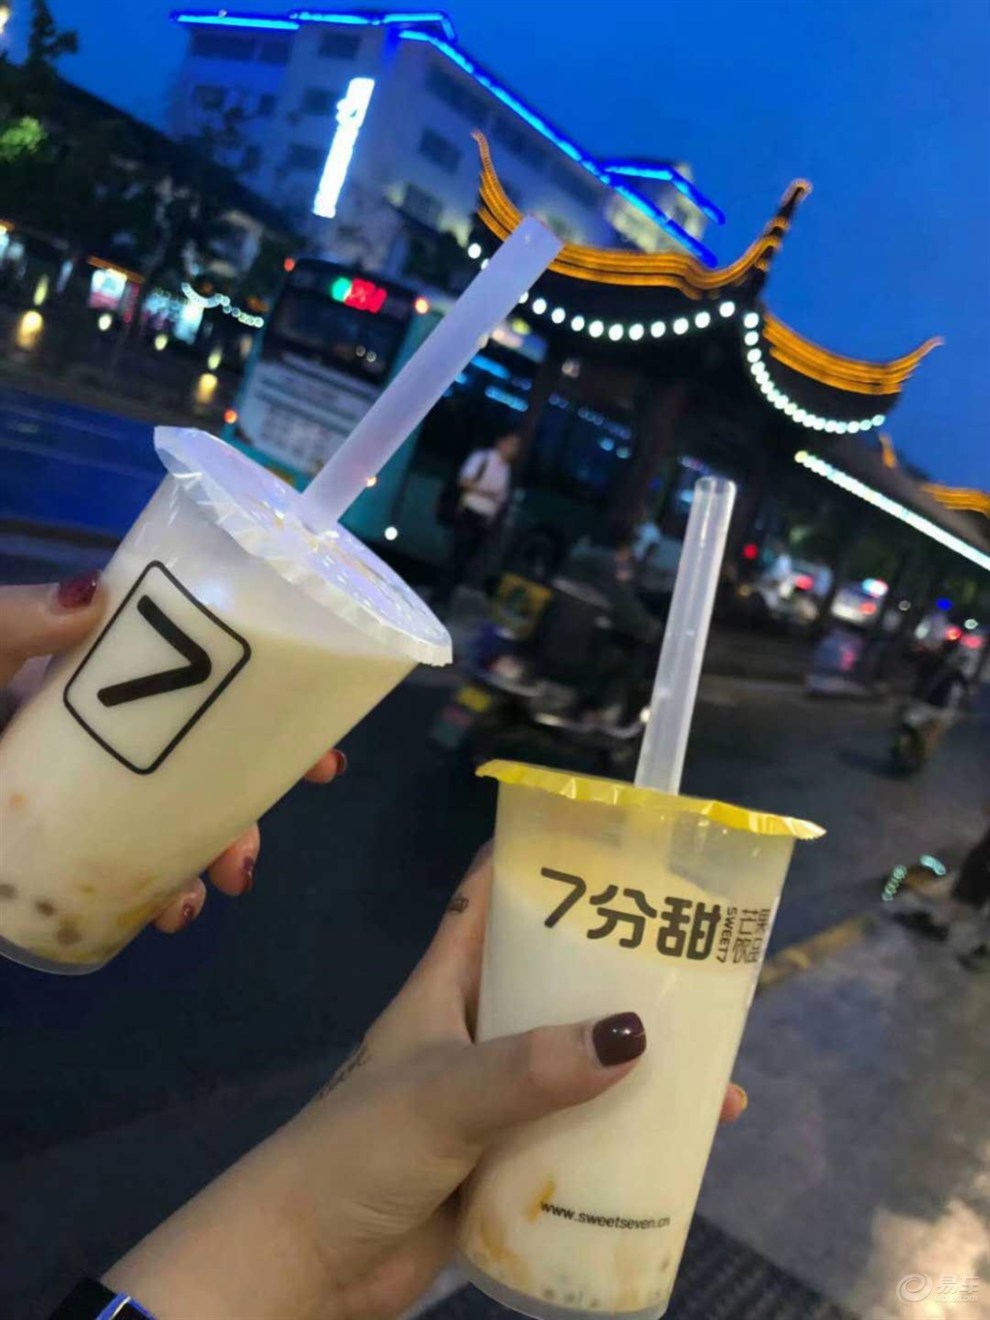 【你们爱喝奶茶吗?】_smw斯威x7图片集锦_汽车论坛-网